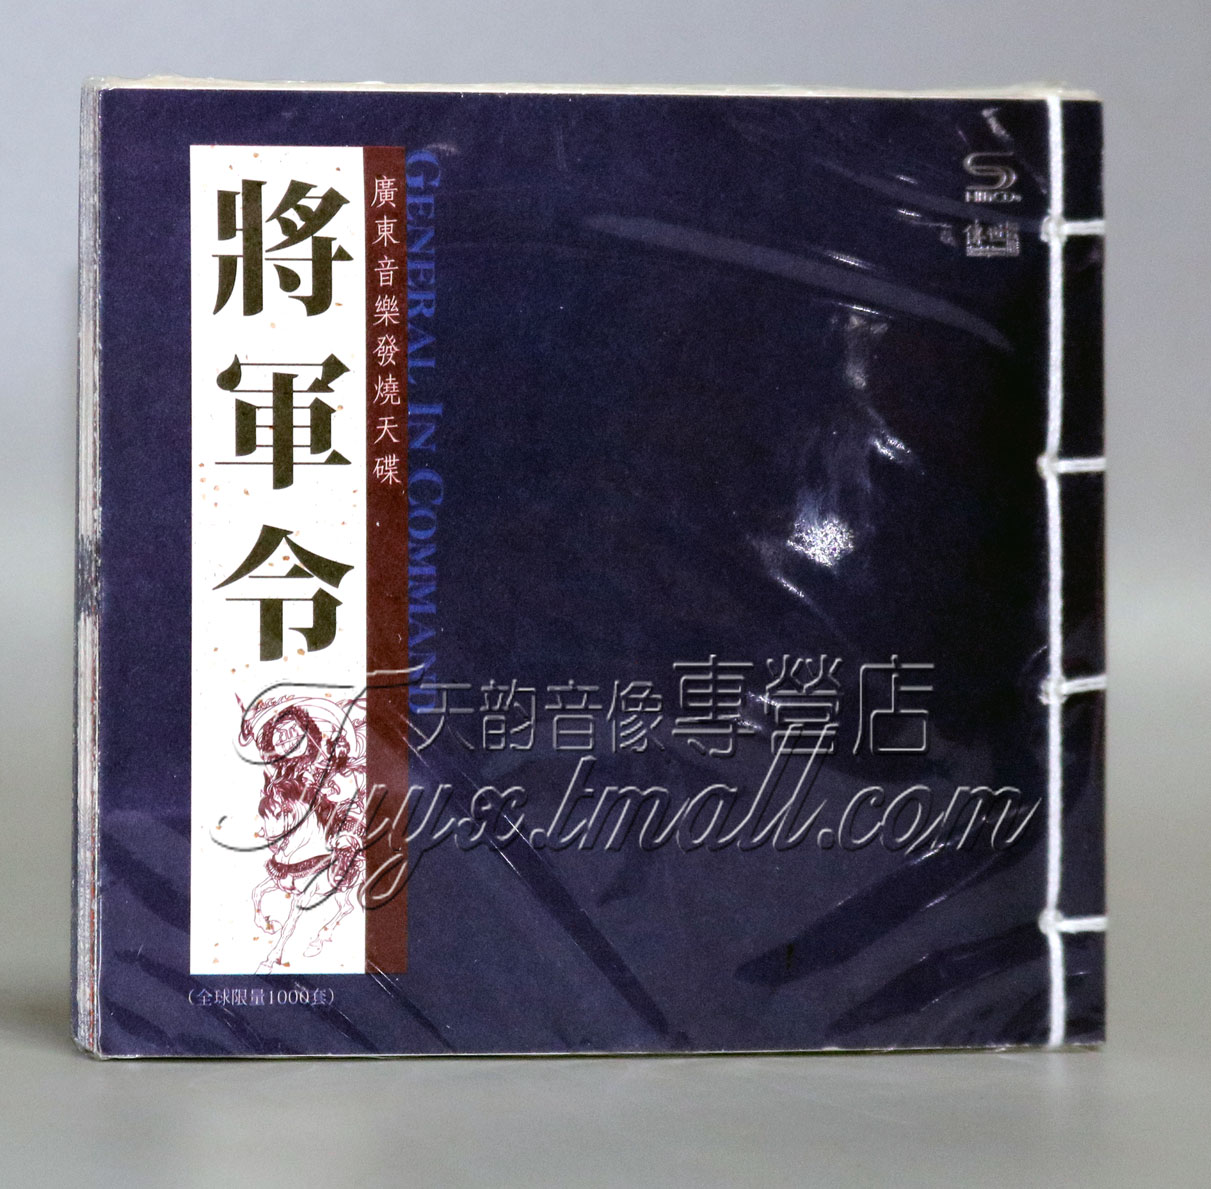 【正版发烧】传世名作 纯民乐 广东音乐发烧天碟《将军令》1CD